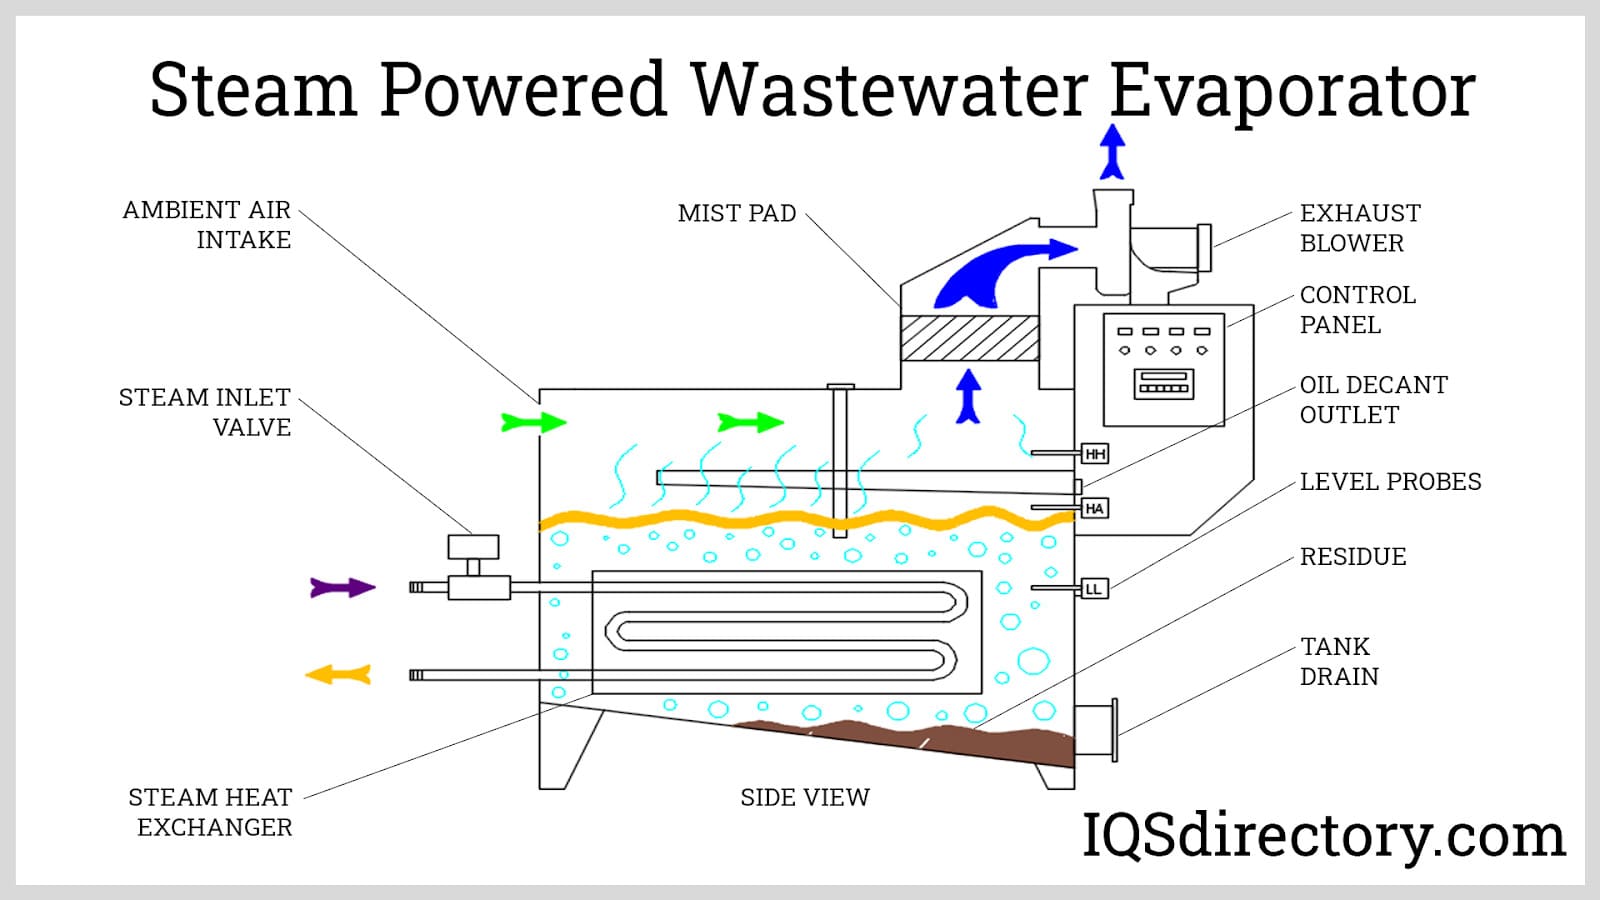 Steam Powered Wastewater Evaporator